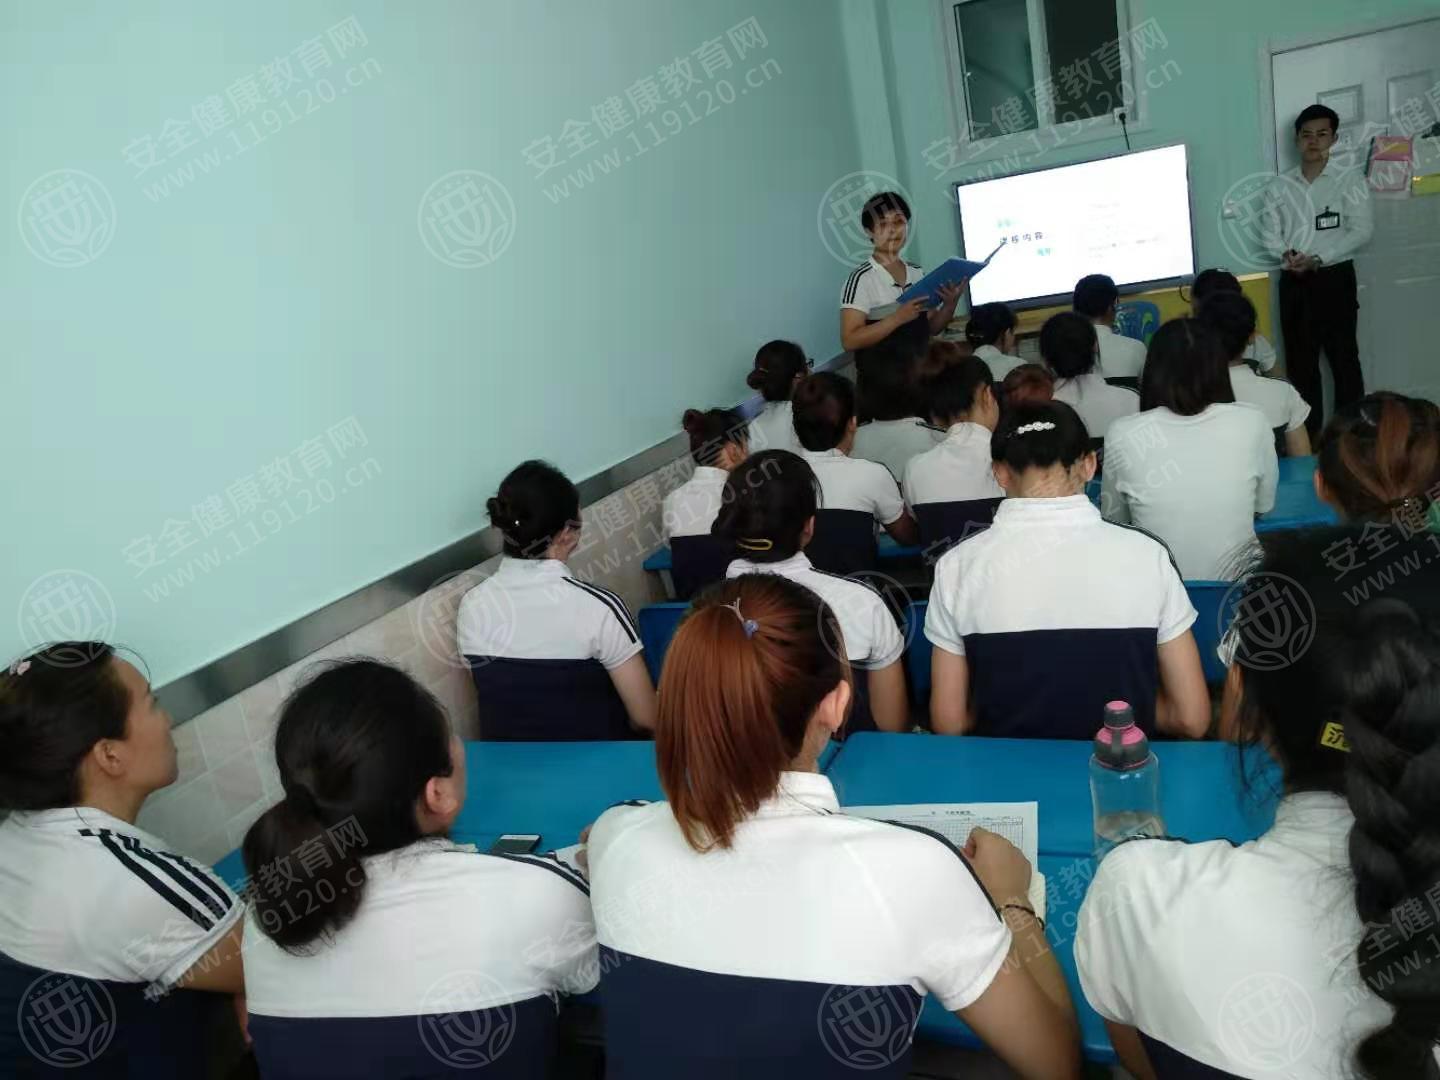 石家庄东兴幼儿园举办健康环保知识公益讲座